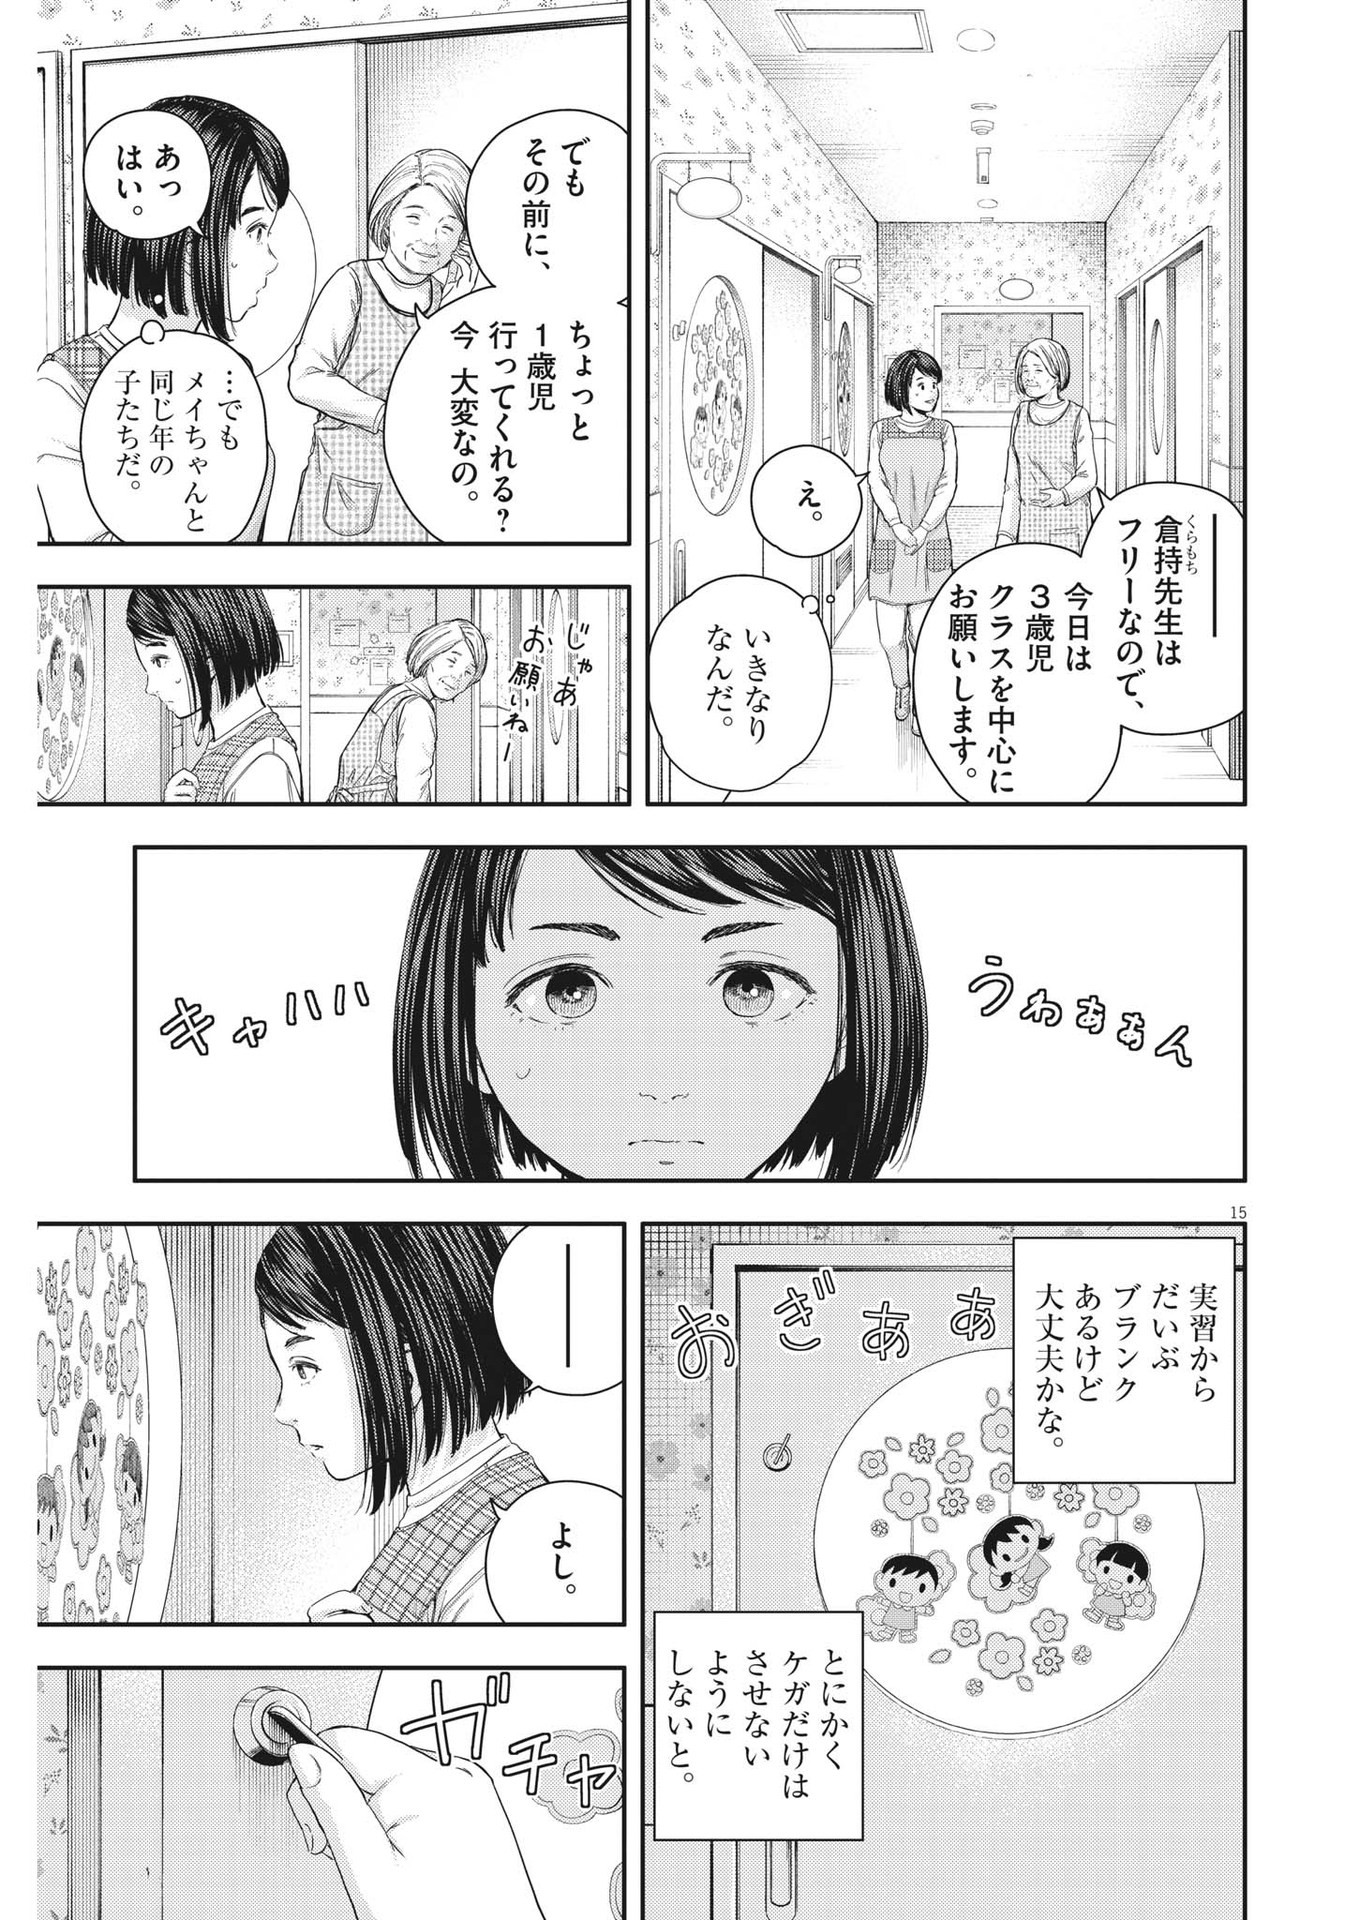 Yumenashi-sensei no Shinroshidou - Chapter 21 - Page 15